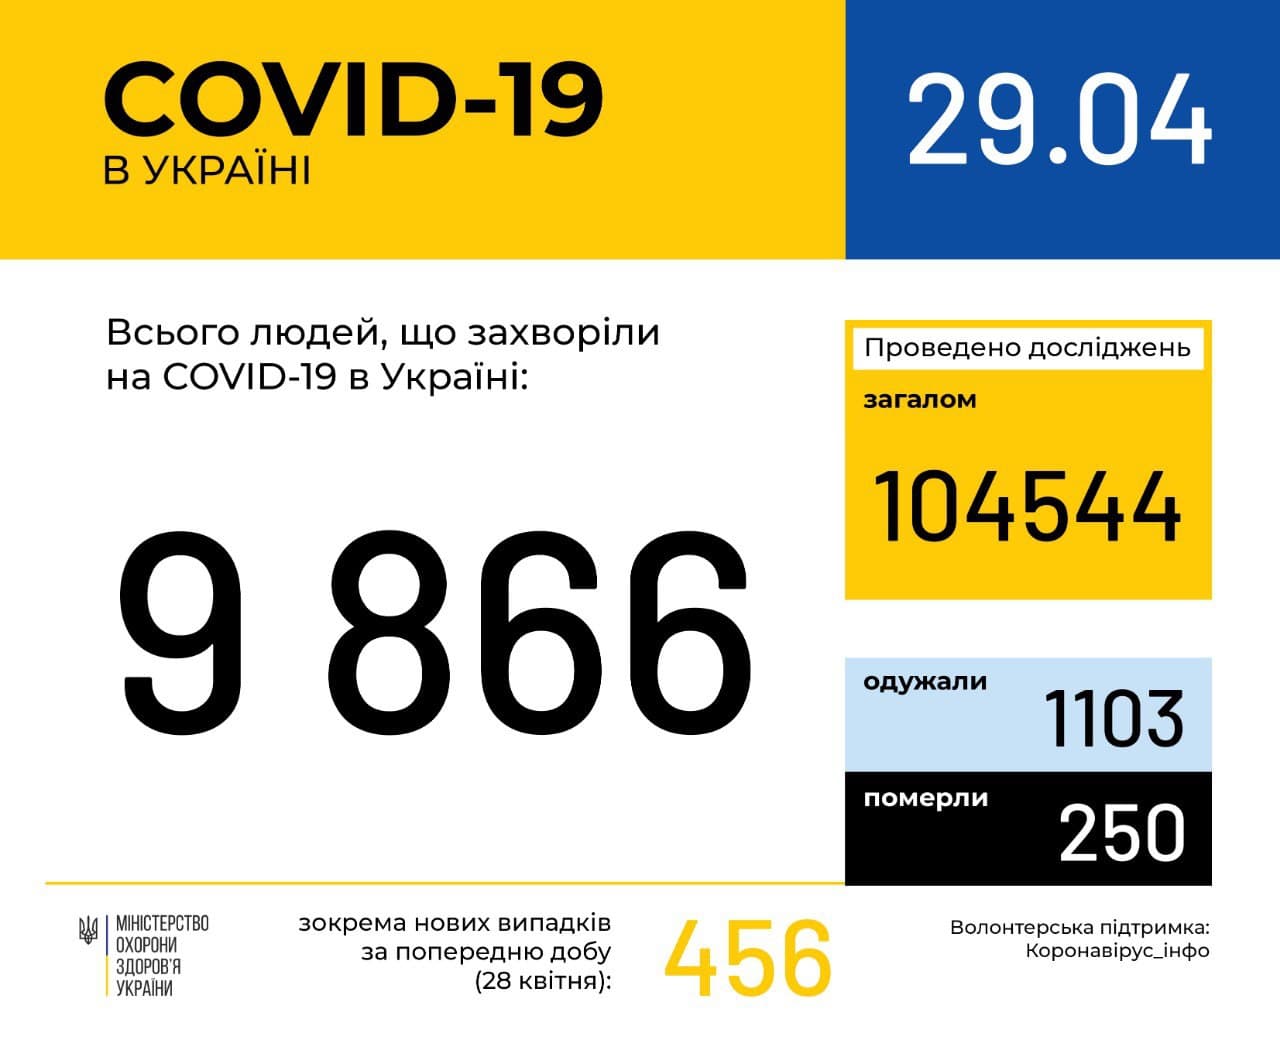 В Україні зафіксовано 9866 випадків коронавірусної хвороби COVID-19, - МОЗ